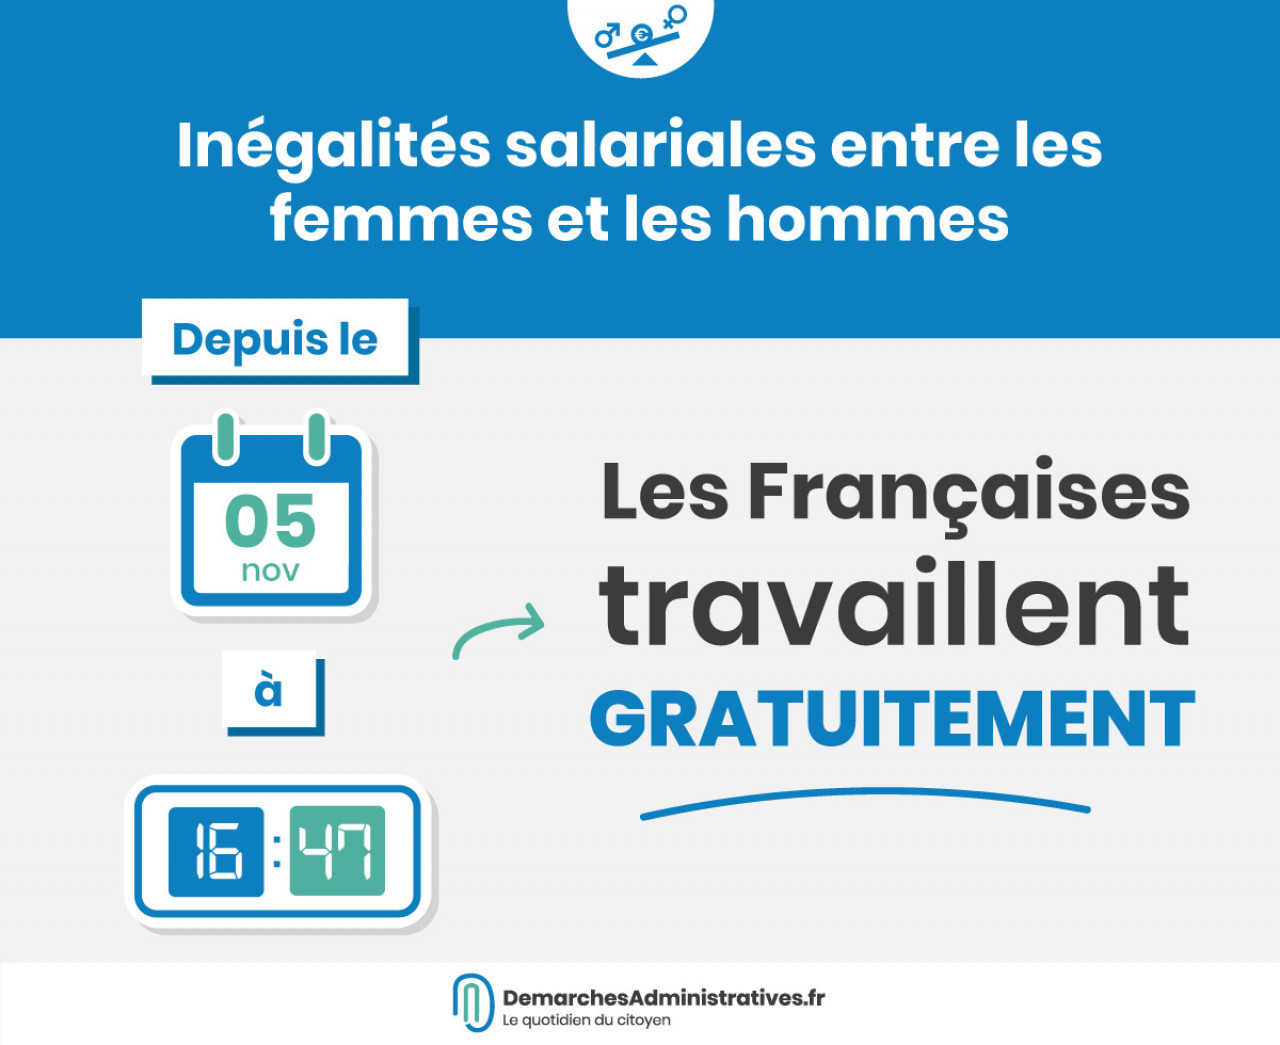 Les Françaises « travaillent gratuitement » depuis le 5 novembre 2019 à 16  h 47